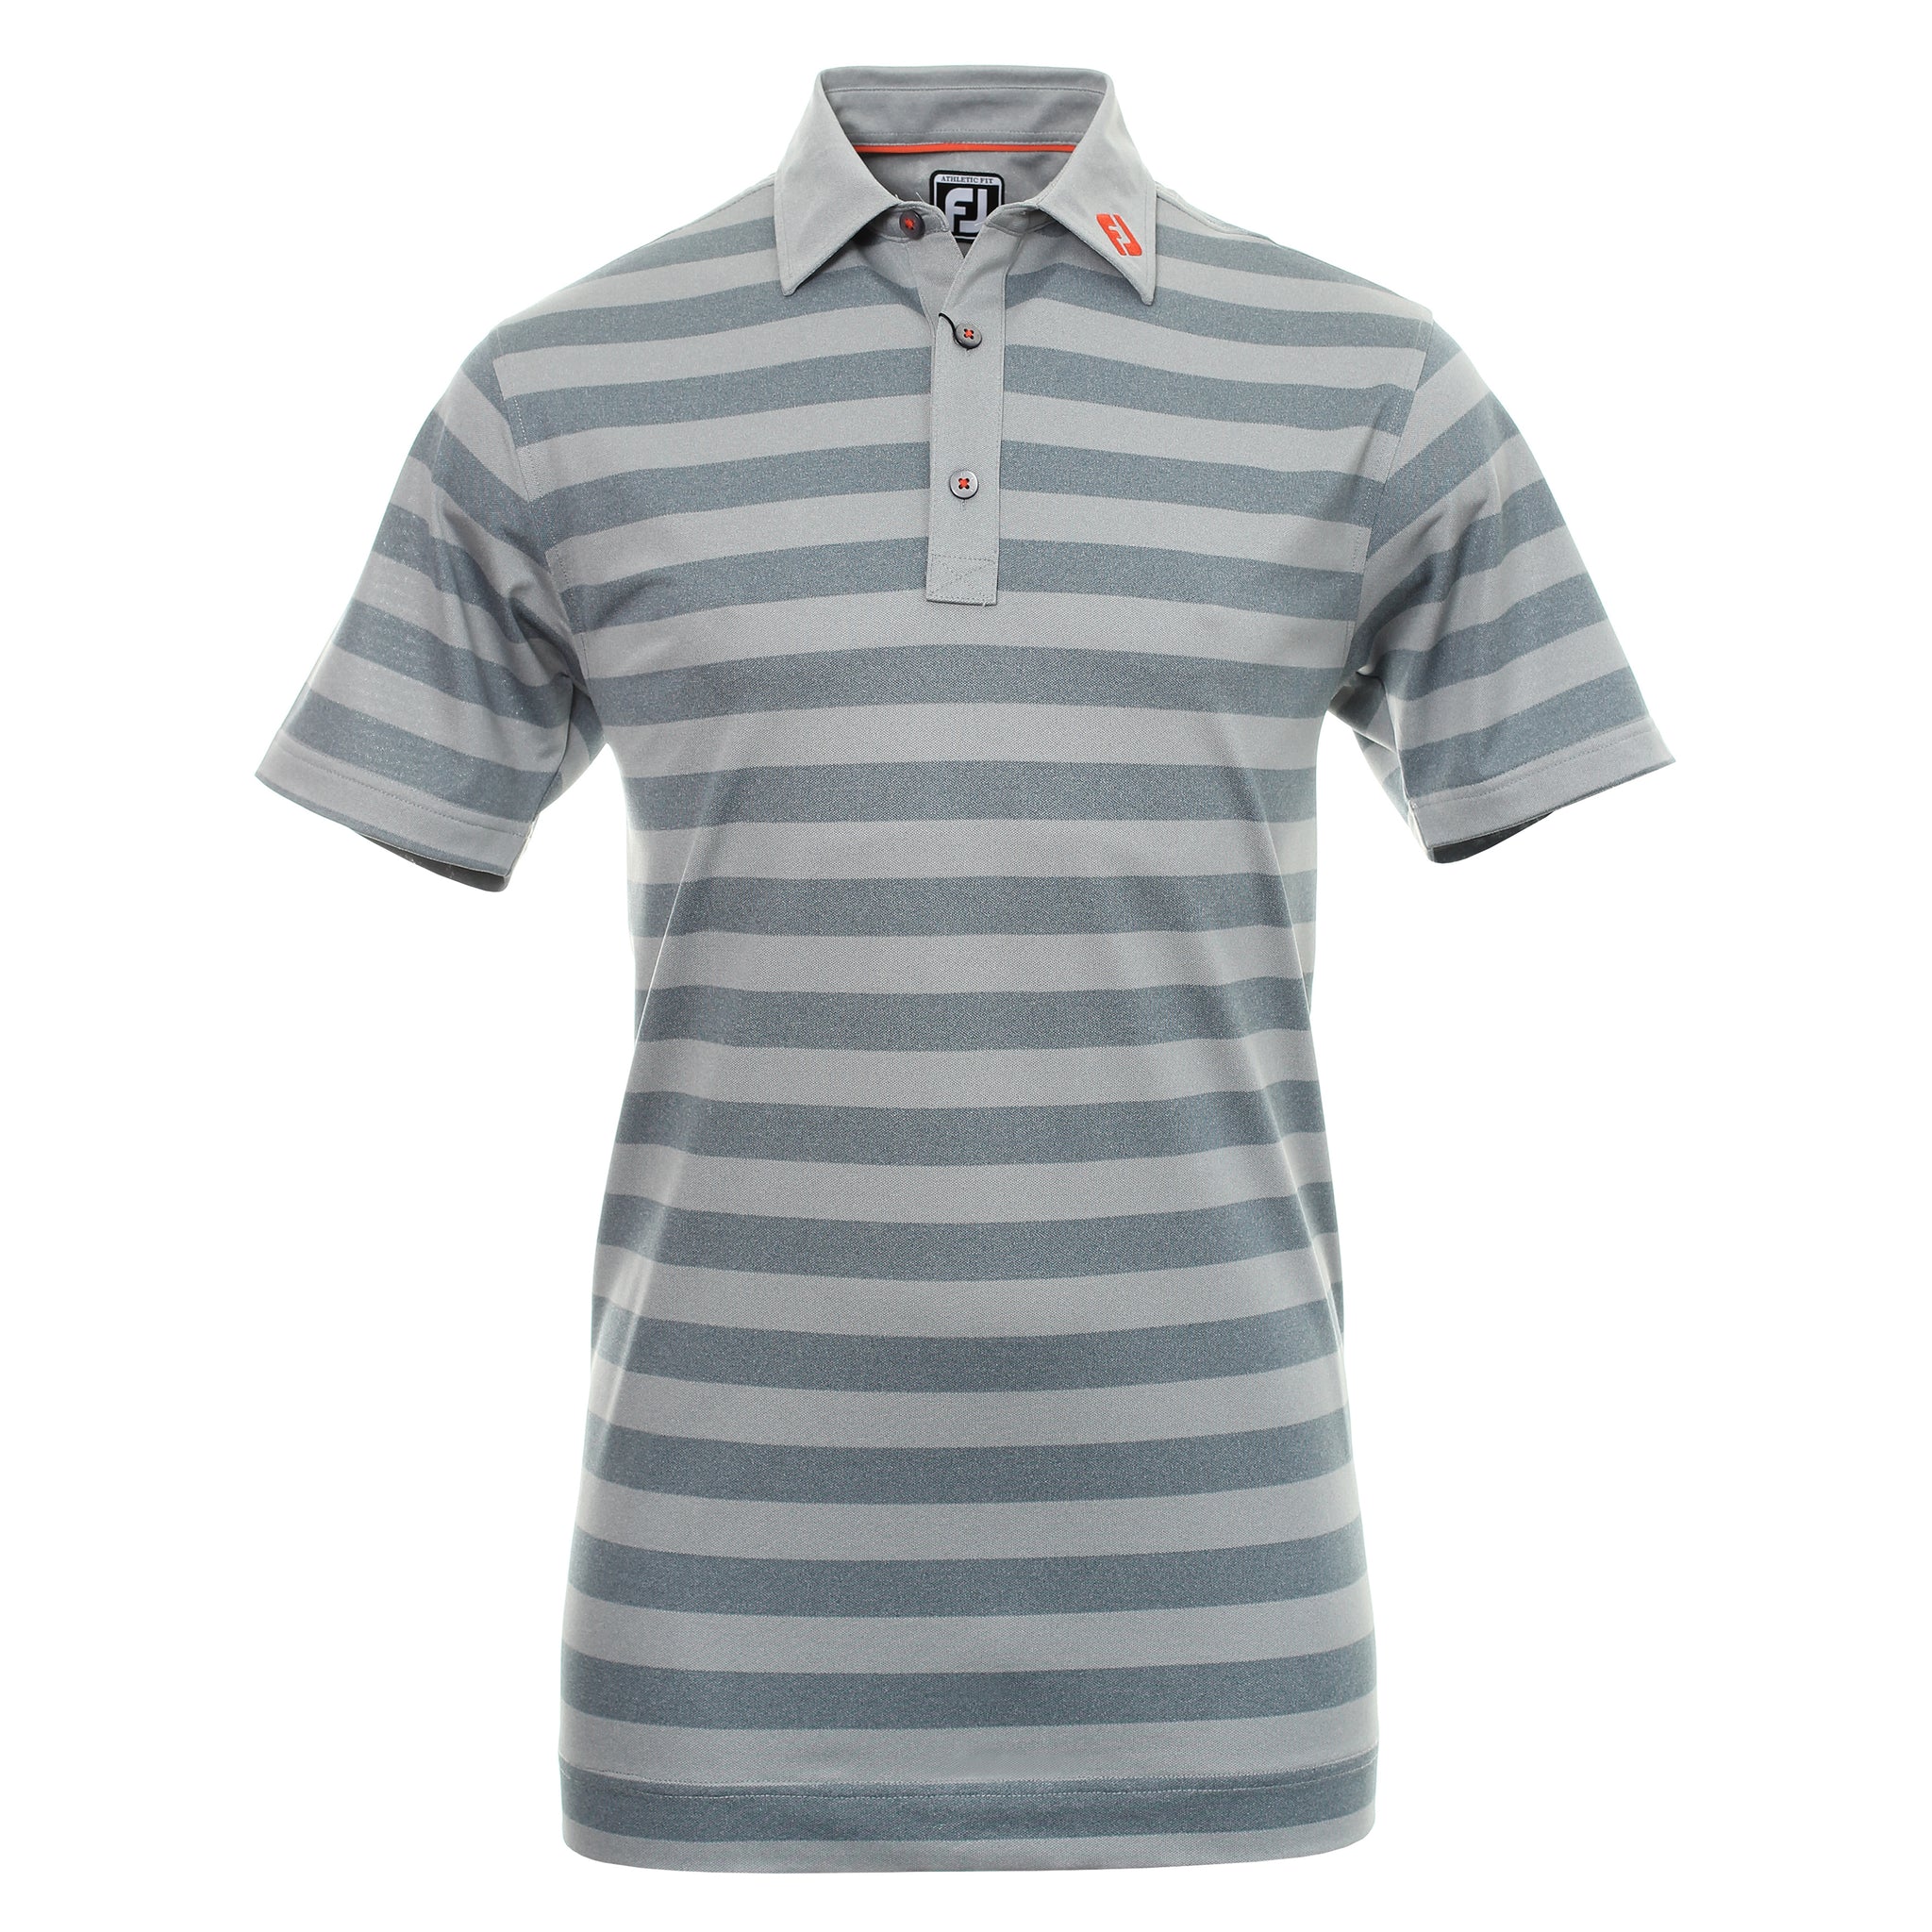 FootJoy Rugby Stripe Golf Shirt